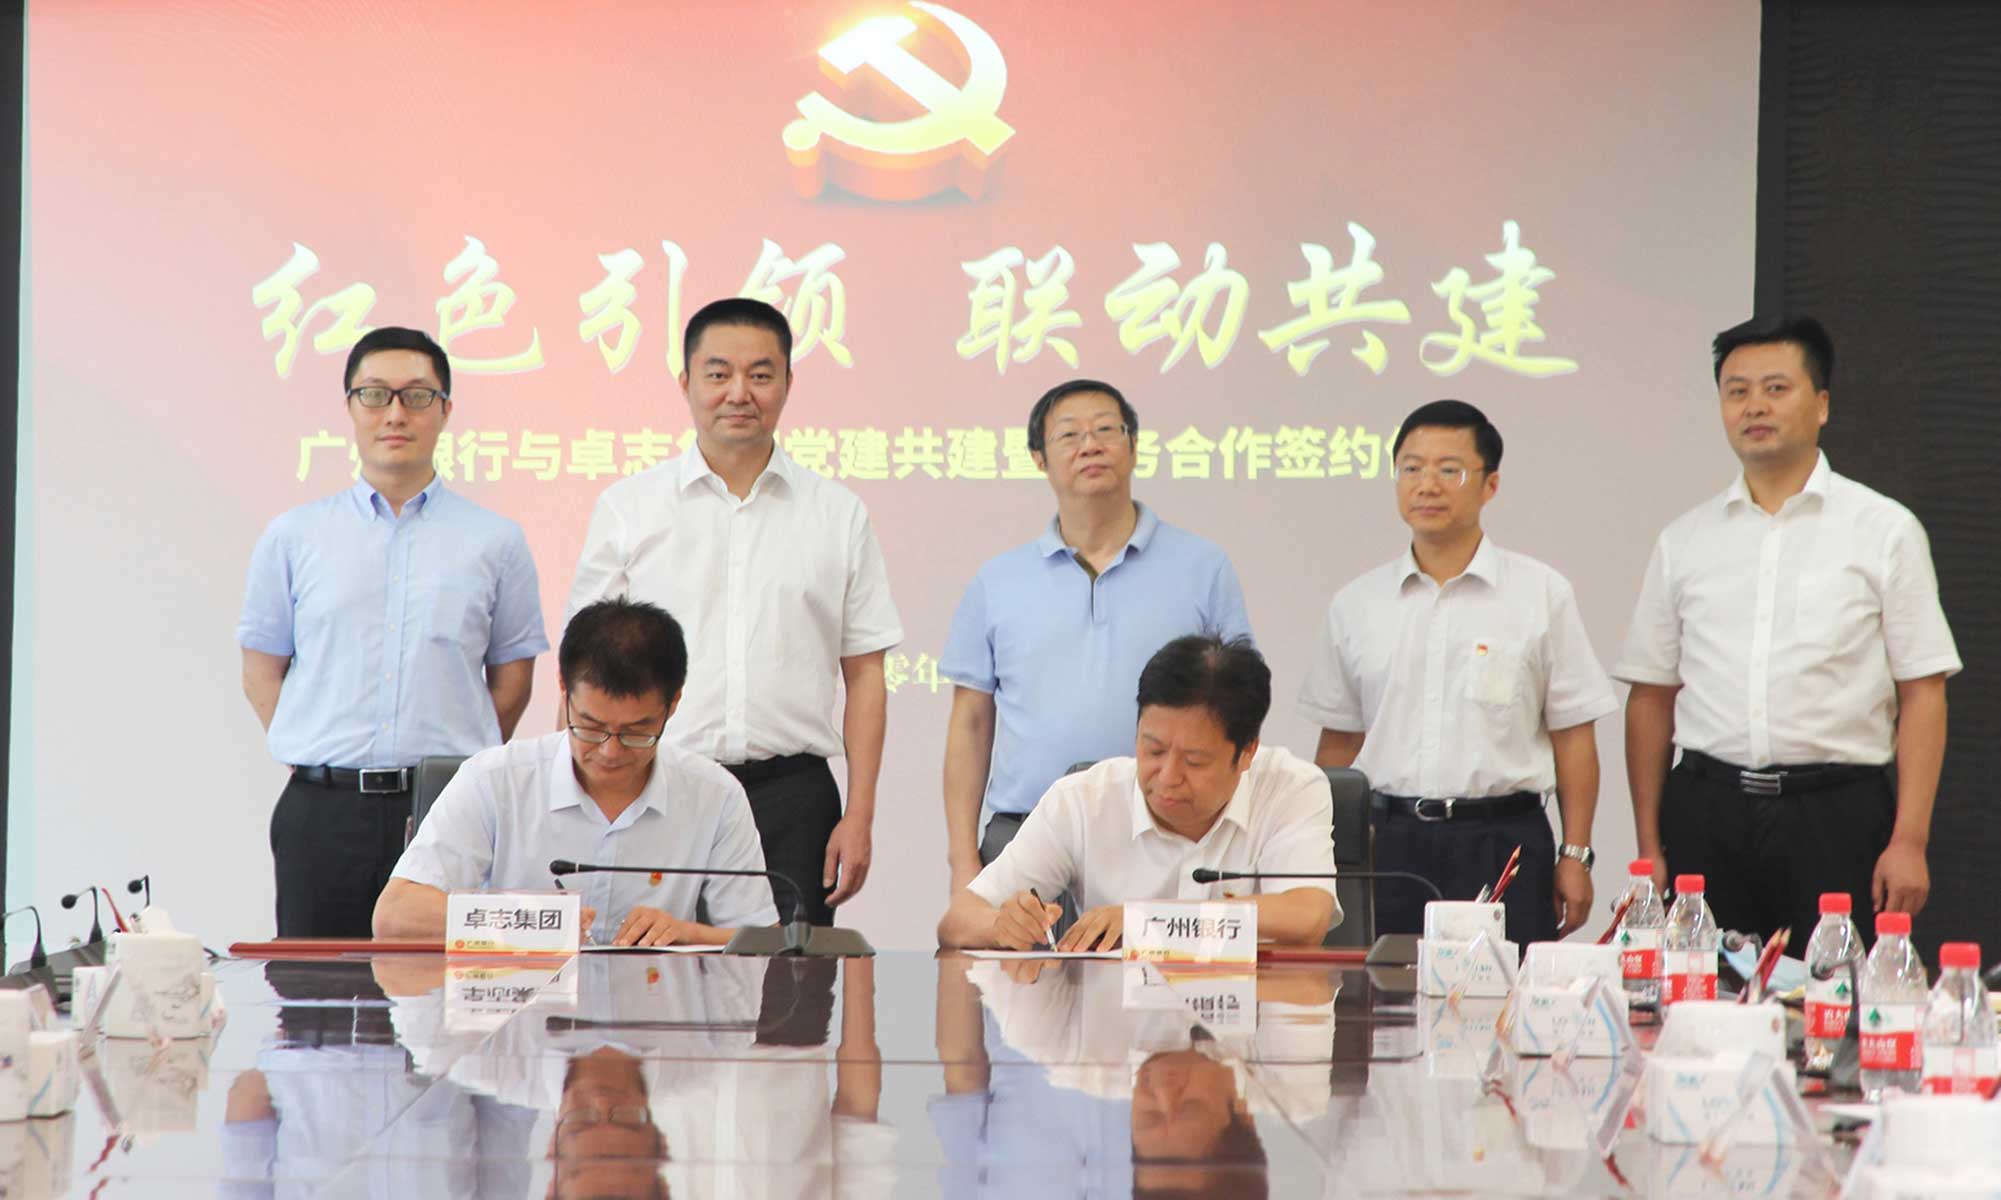 卓志集团党支部书记于崇刚代表公司与广州银行签署党组织共建协议书